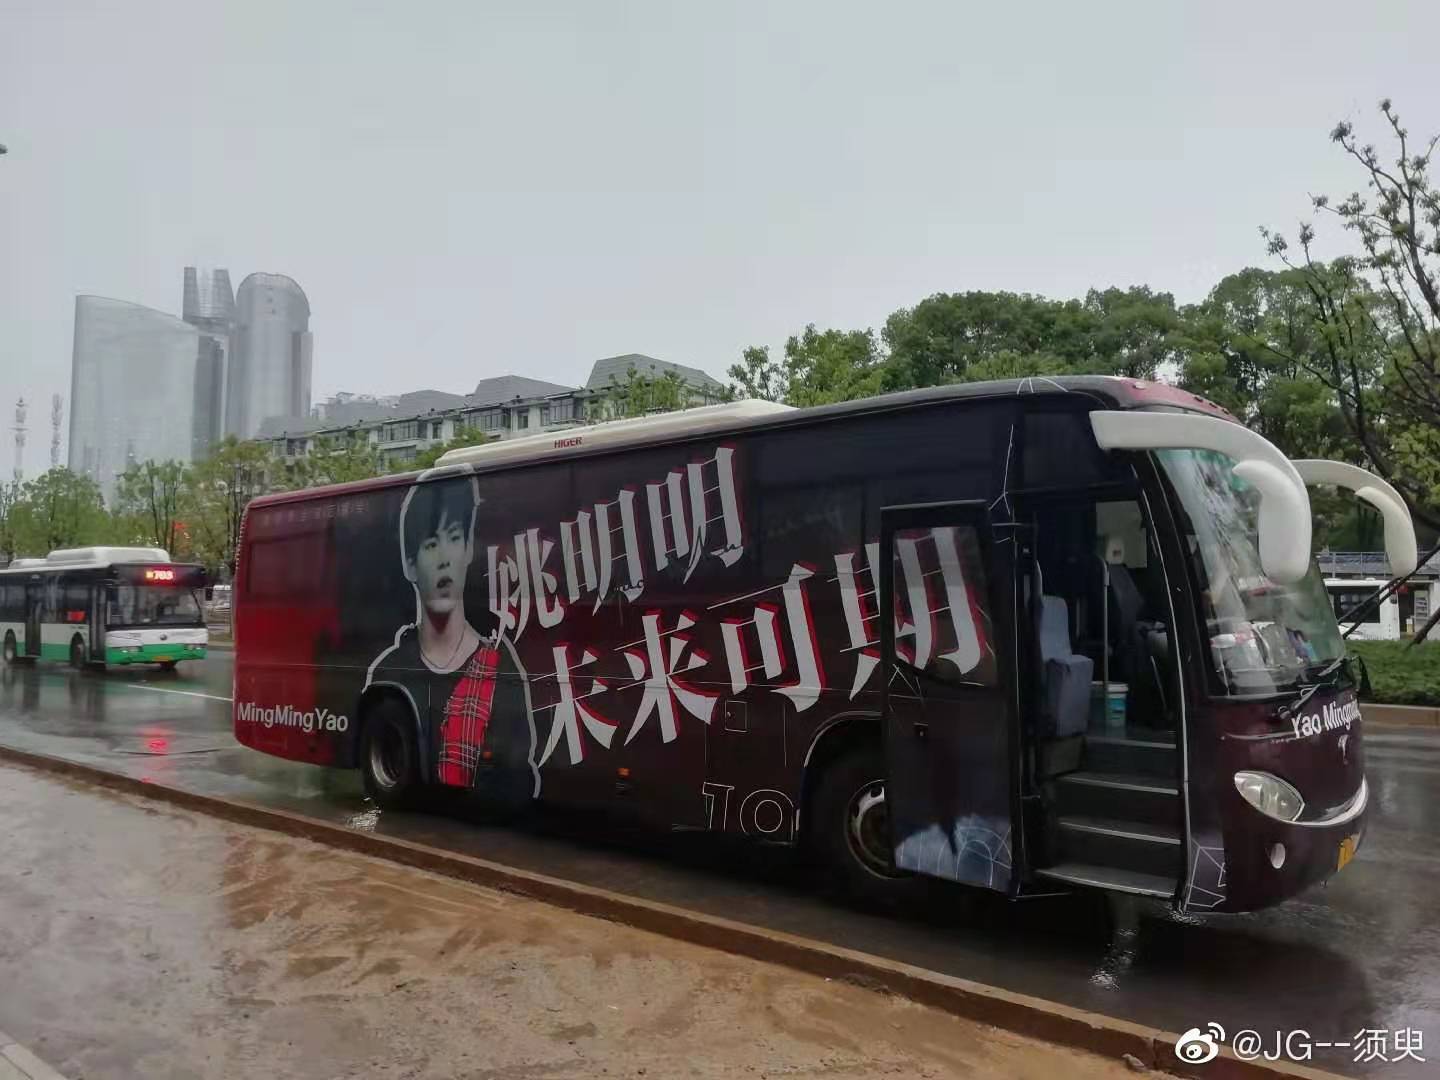 重庆公交候车亭广告|重庆大巴车体广告|重庆公交大巴车身广告发布